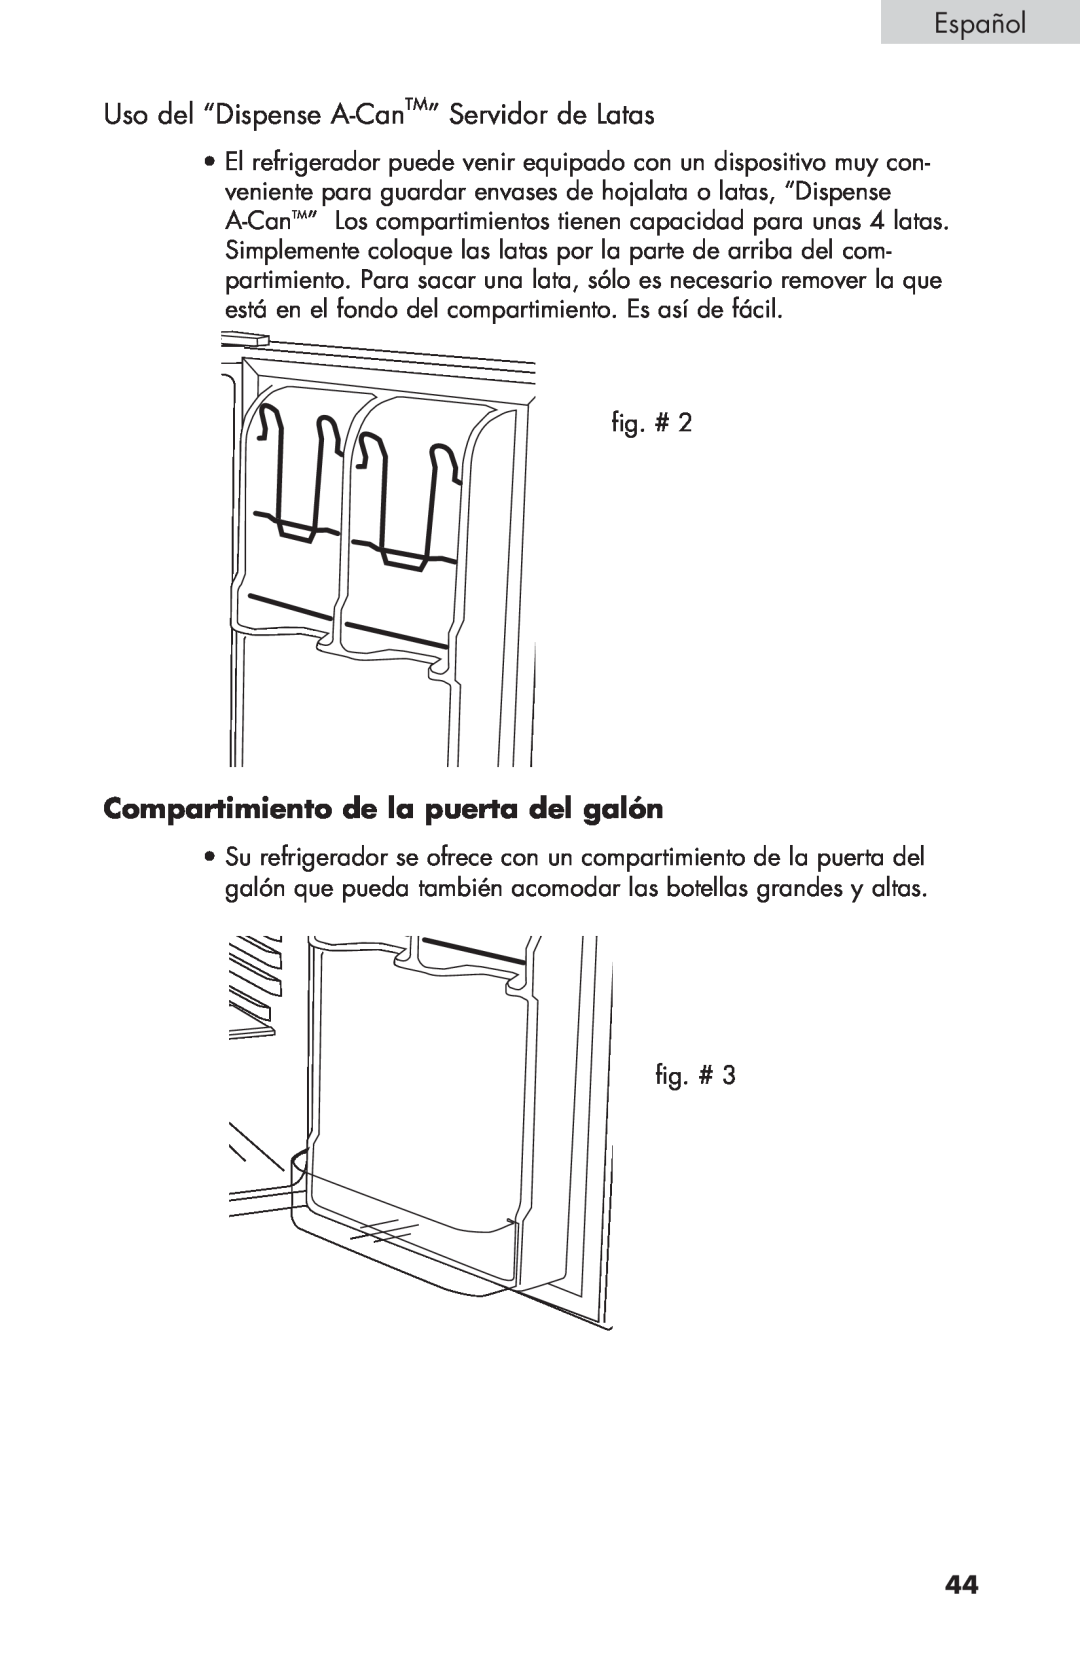 Haier HNSE032 manual Español, Uso del “Dispense A-CanTM”Servidor de Latas, Compartimiento de la puerta del galón 